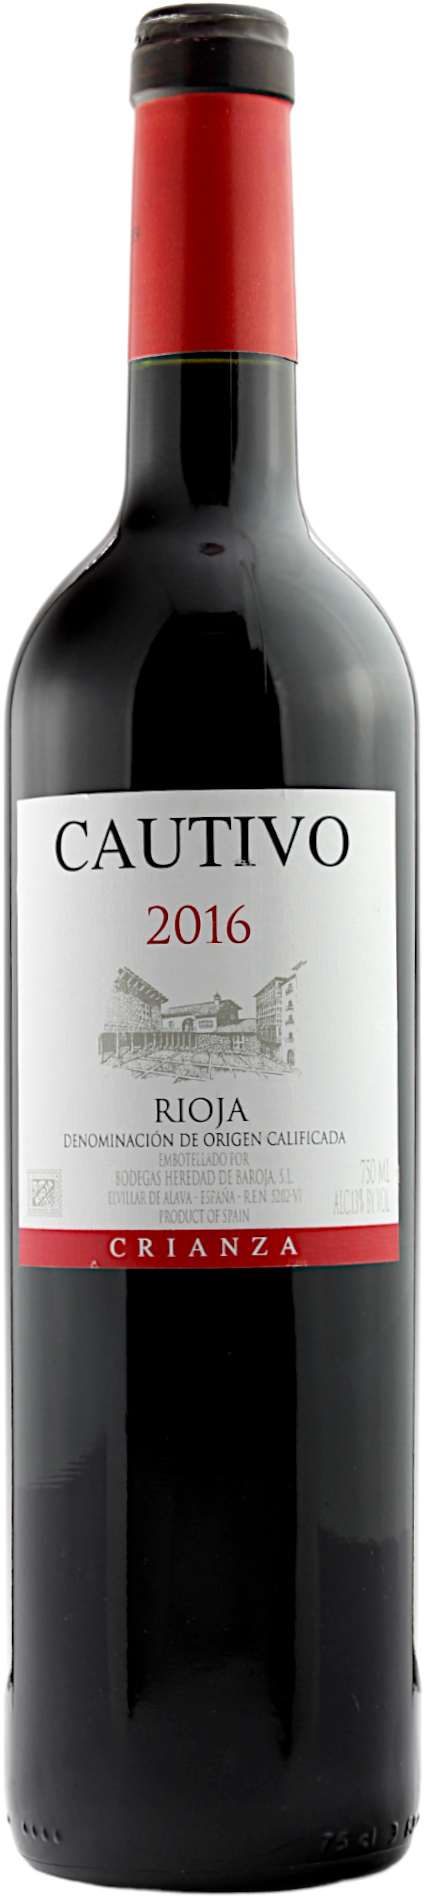 Rioja Cautivo Crianza DOCa 2016 13.0% 0,75l